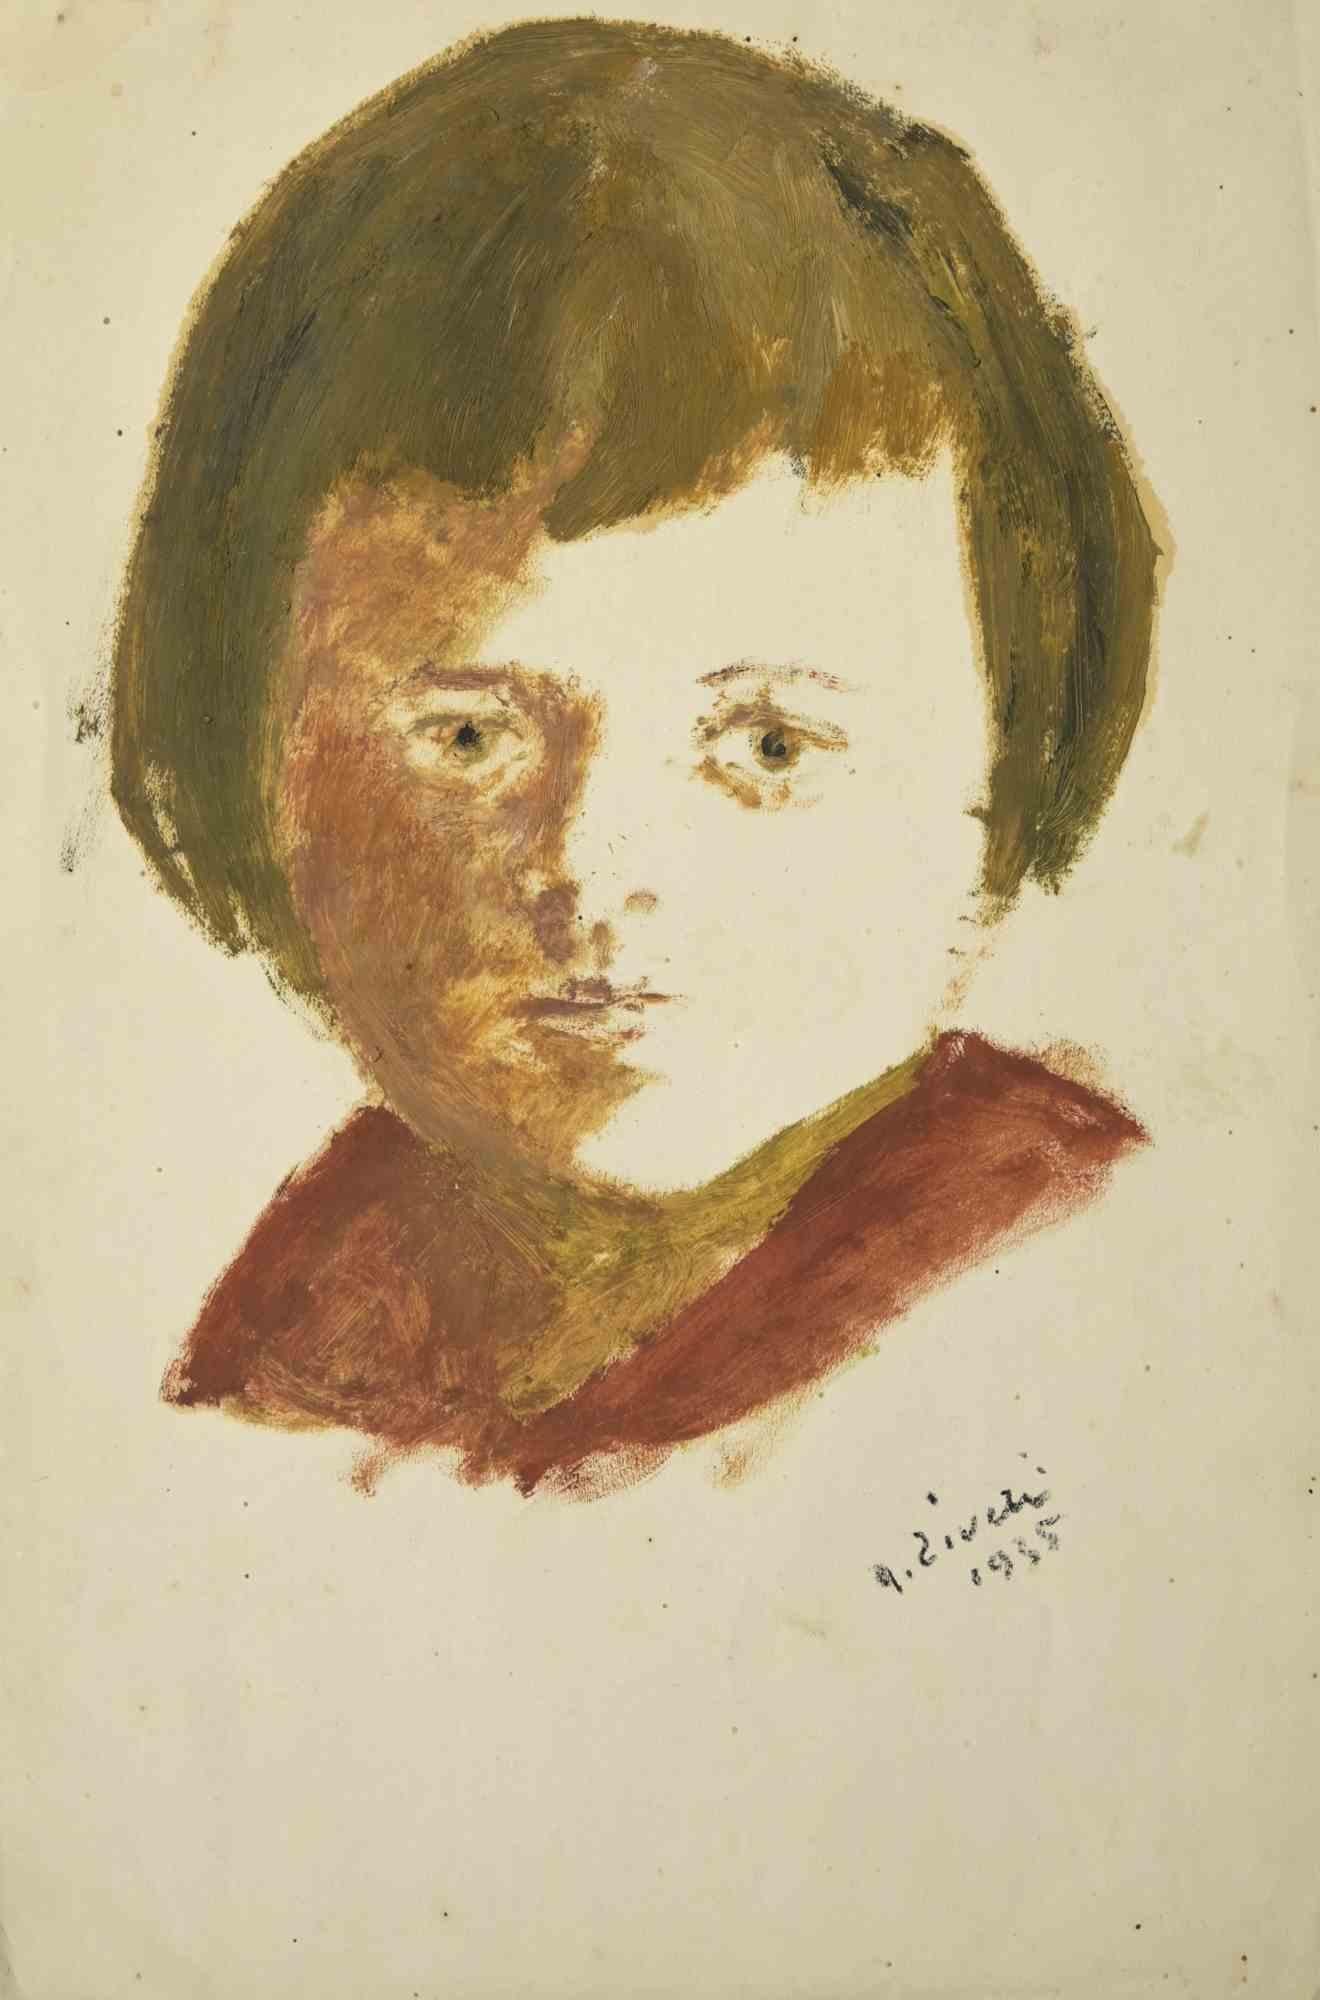 Das Porträt des Kindes ist eine Zeichnung von Alberto Ziveri aus dem Jahr 1935.

Tempera auf Papier.

Handsigniert.

In gutem Zustand.